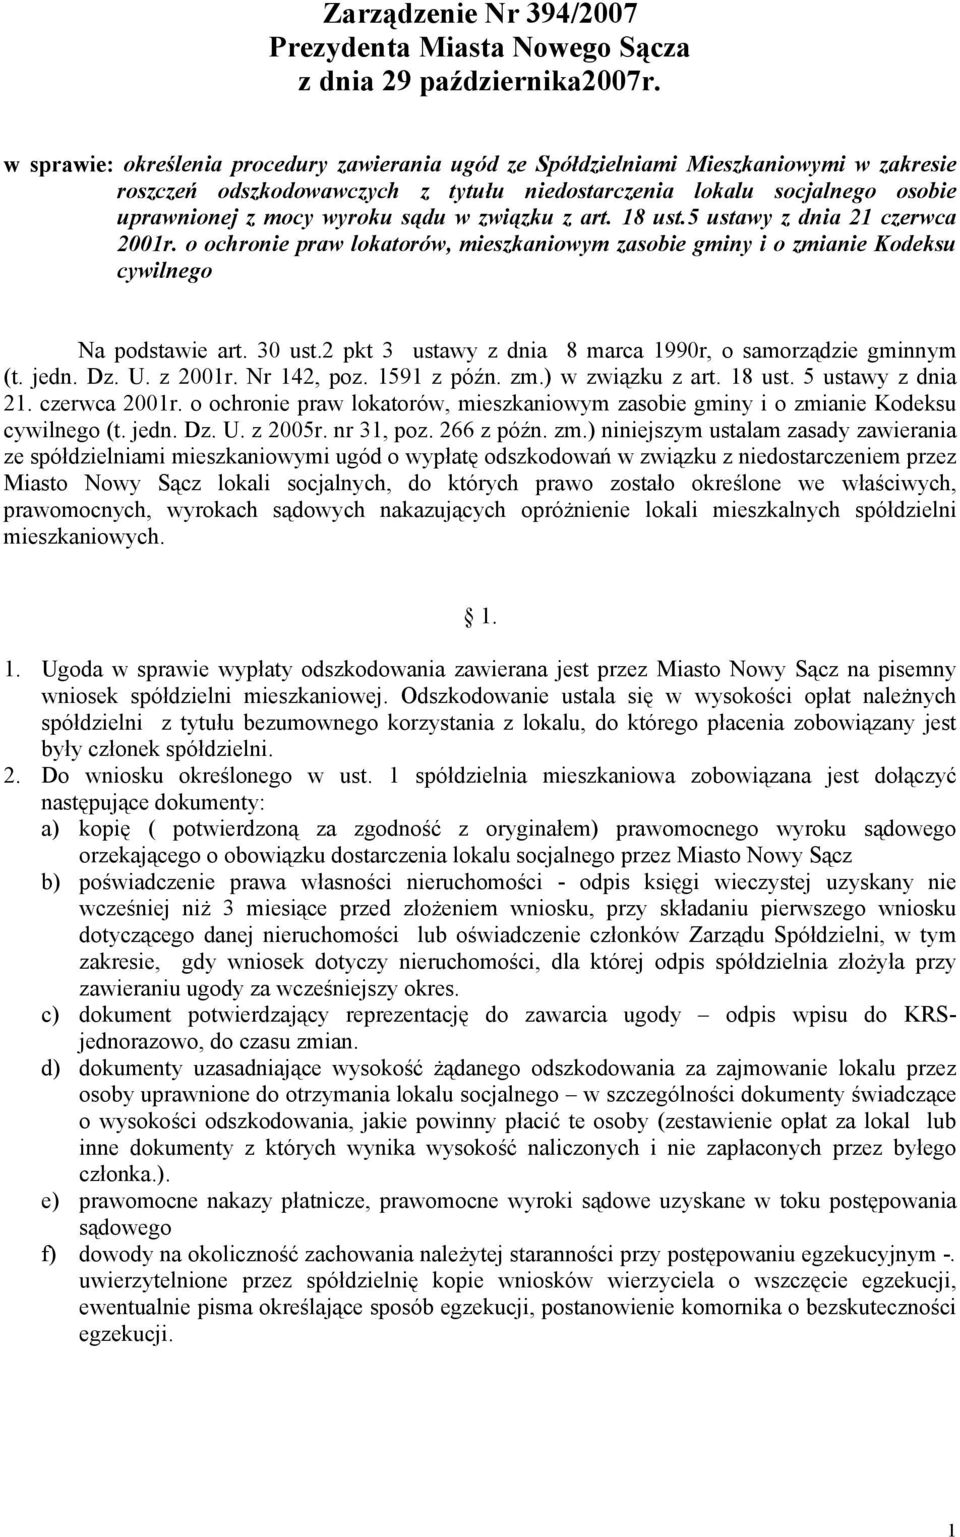 w związku z art. 18 ust.5 ustawy z dnia 21 czerwca 2001r. o ochronie praw lokatorów, mieszkaniowym zasobie gminy i o zmianie Kodeksu cywilnego Na podstawie art. 30 ust.